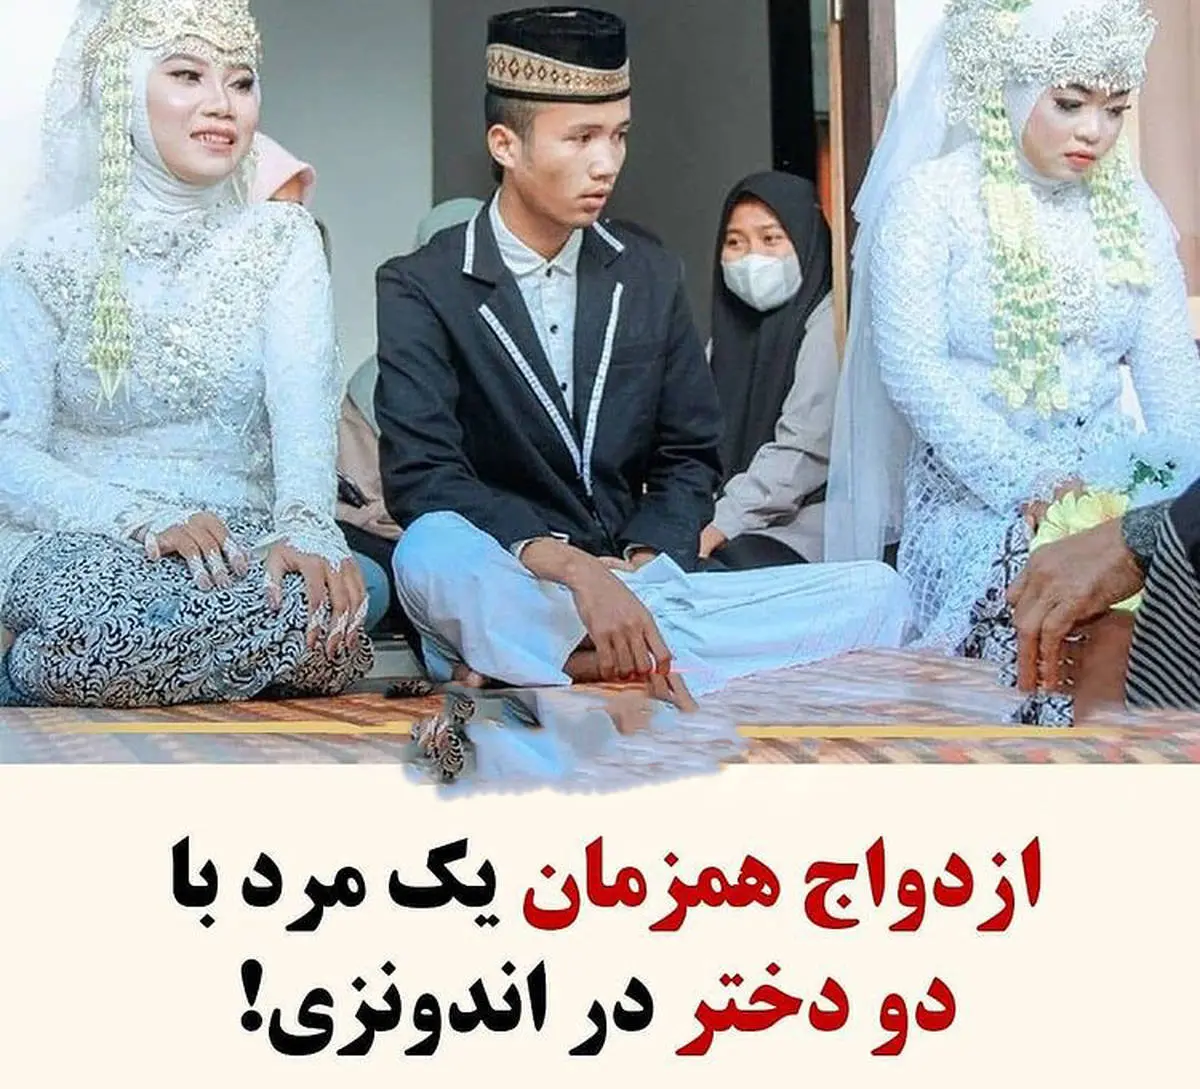 ماجرای عجیب ازدواج همزمان یک مرد با دو دختر | عکس مراسم ازدواج 